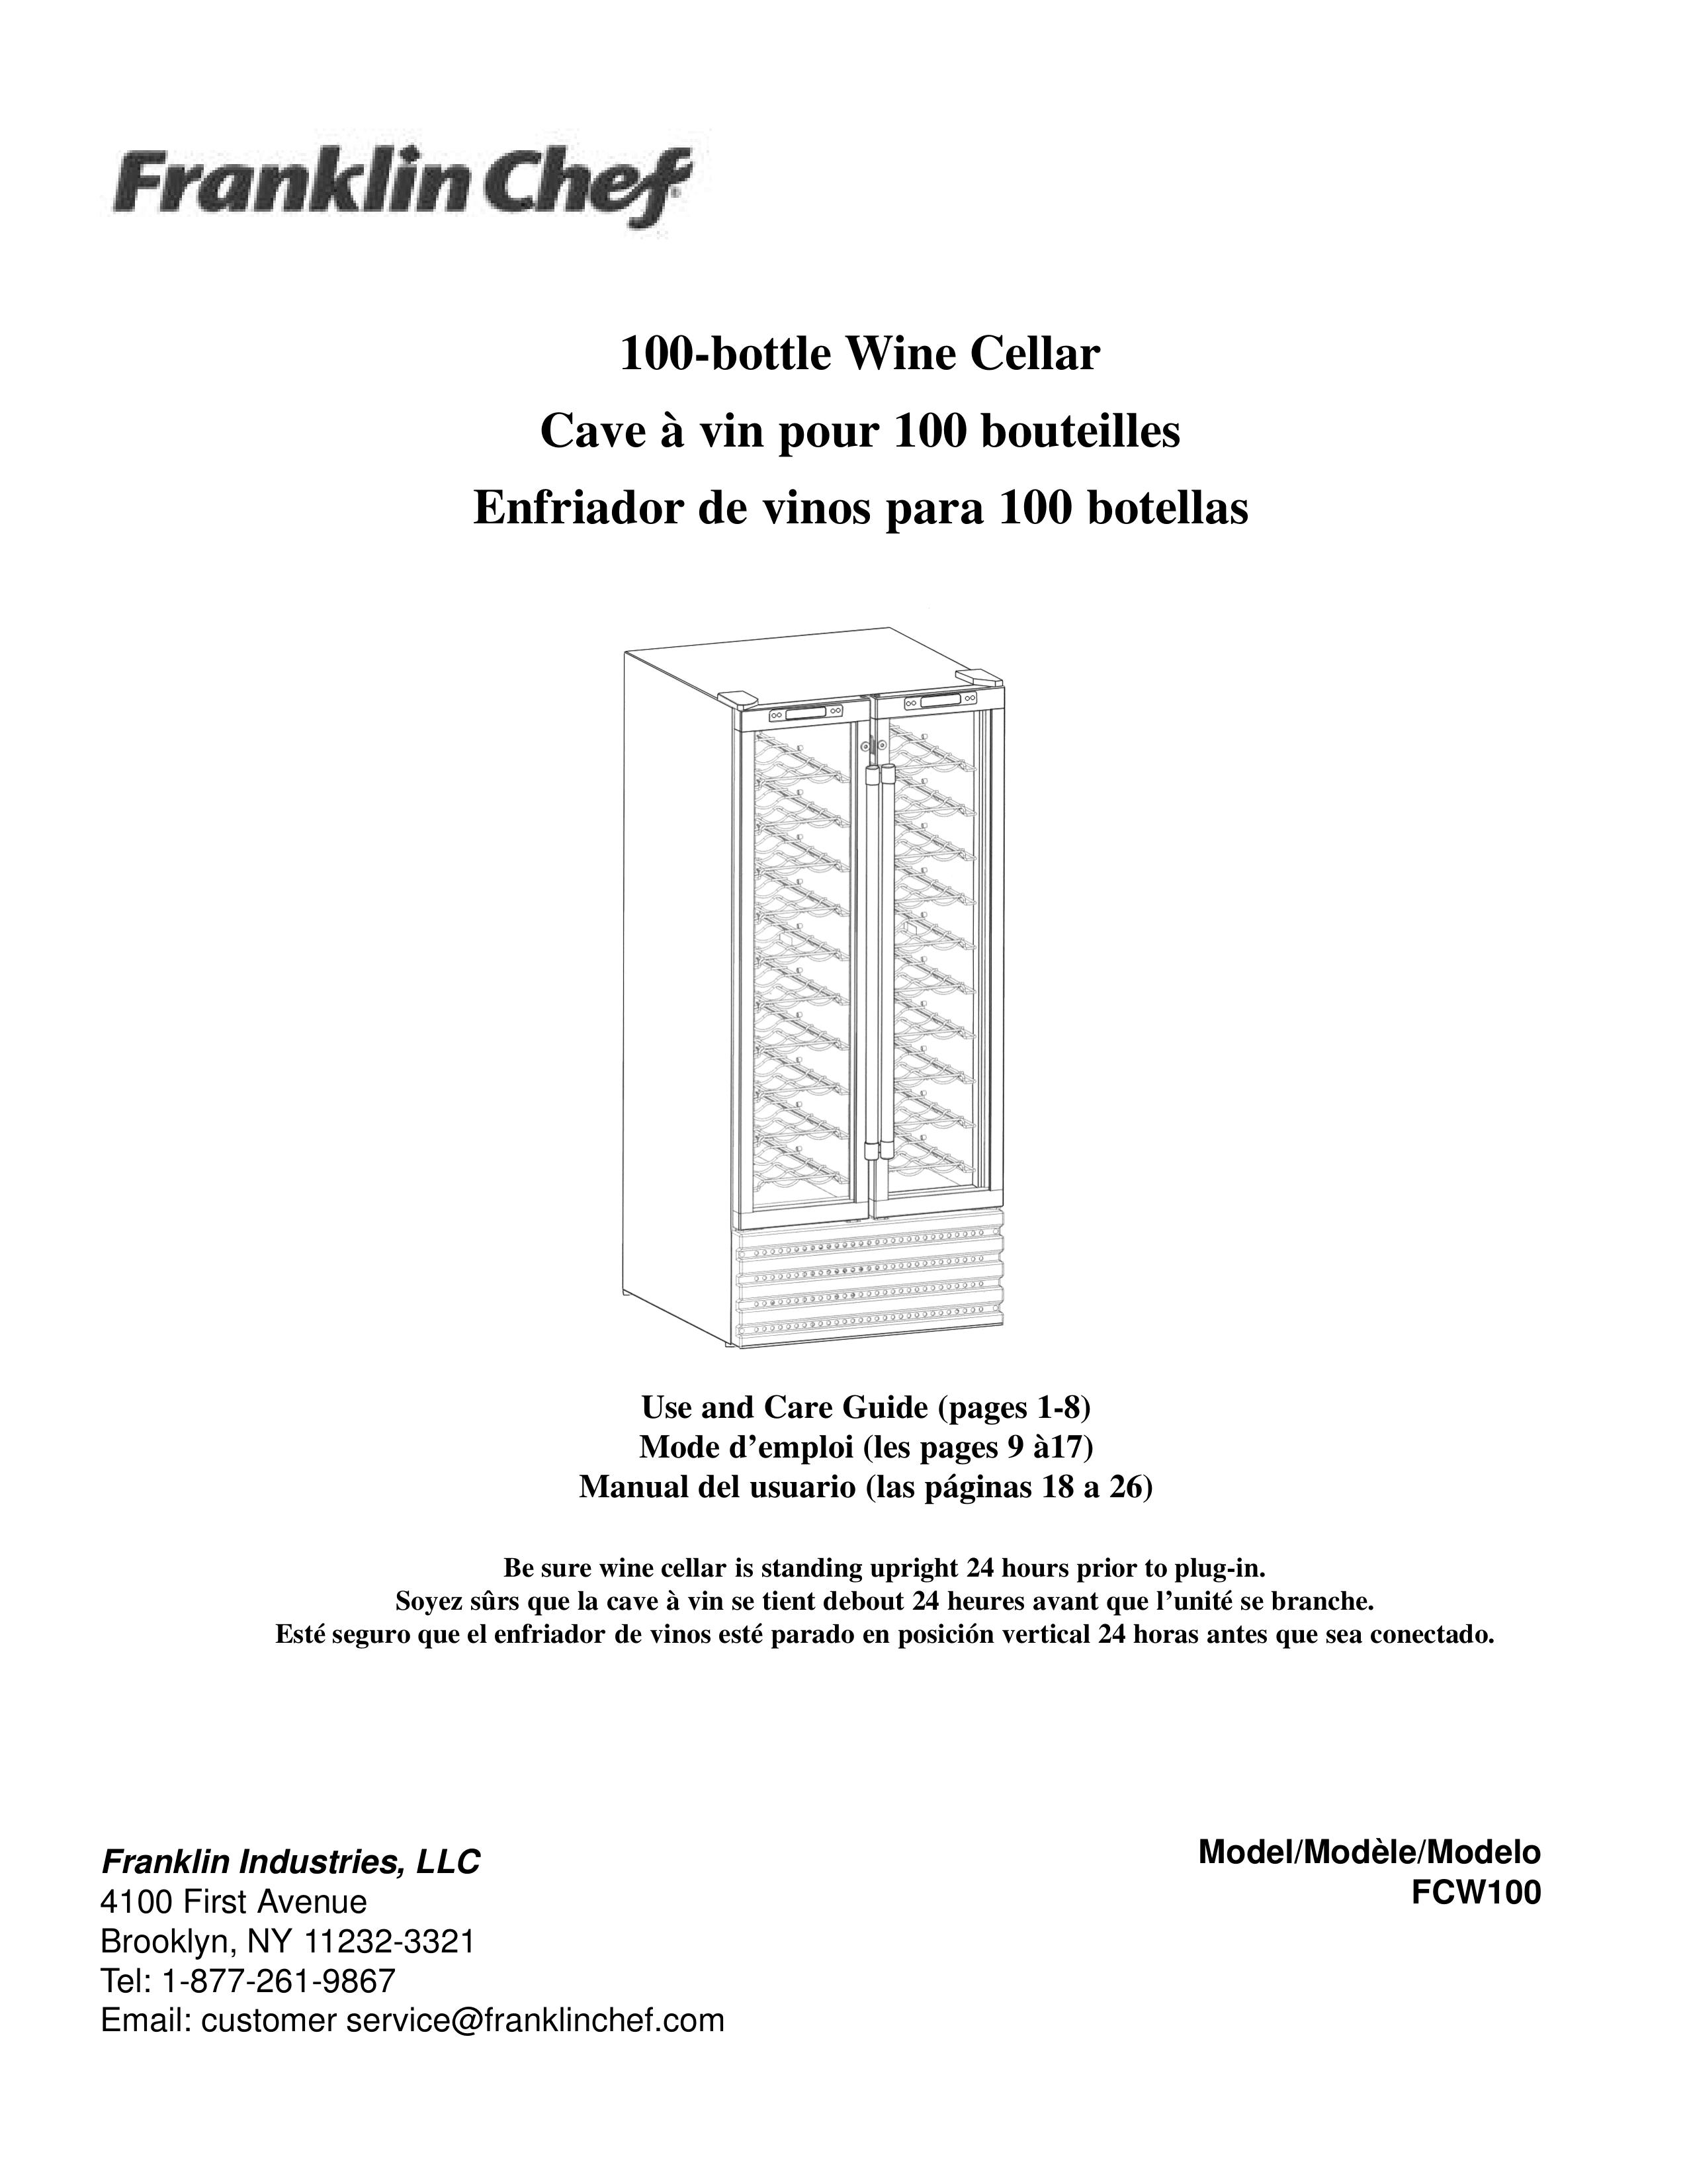 Franklin Industries, L.L.C. FCW100 Refrigerator User Manual